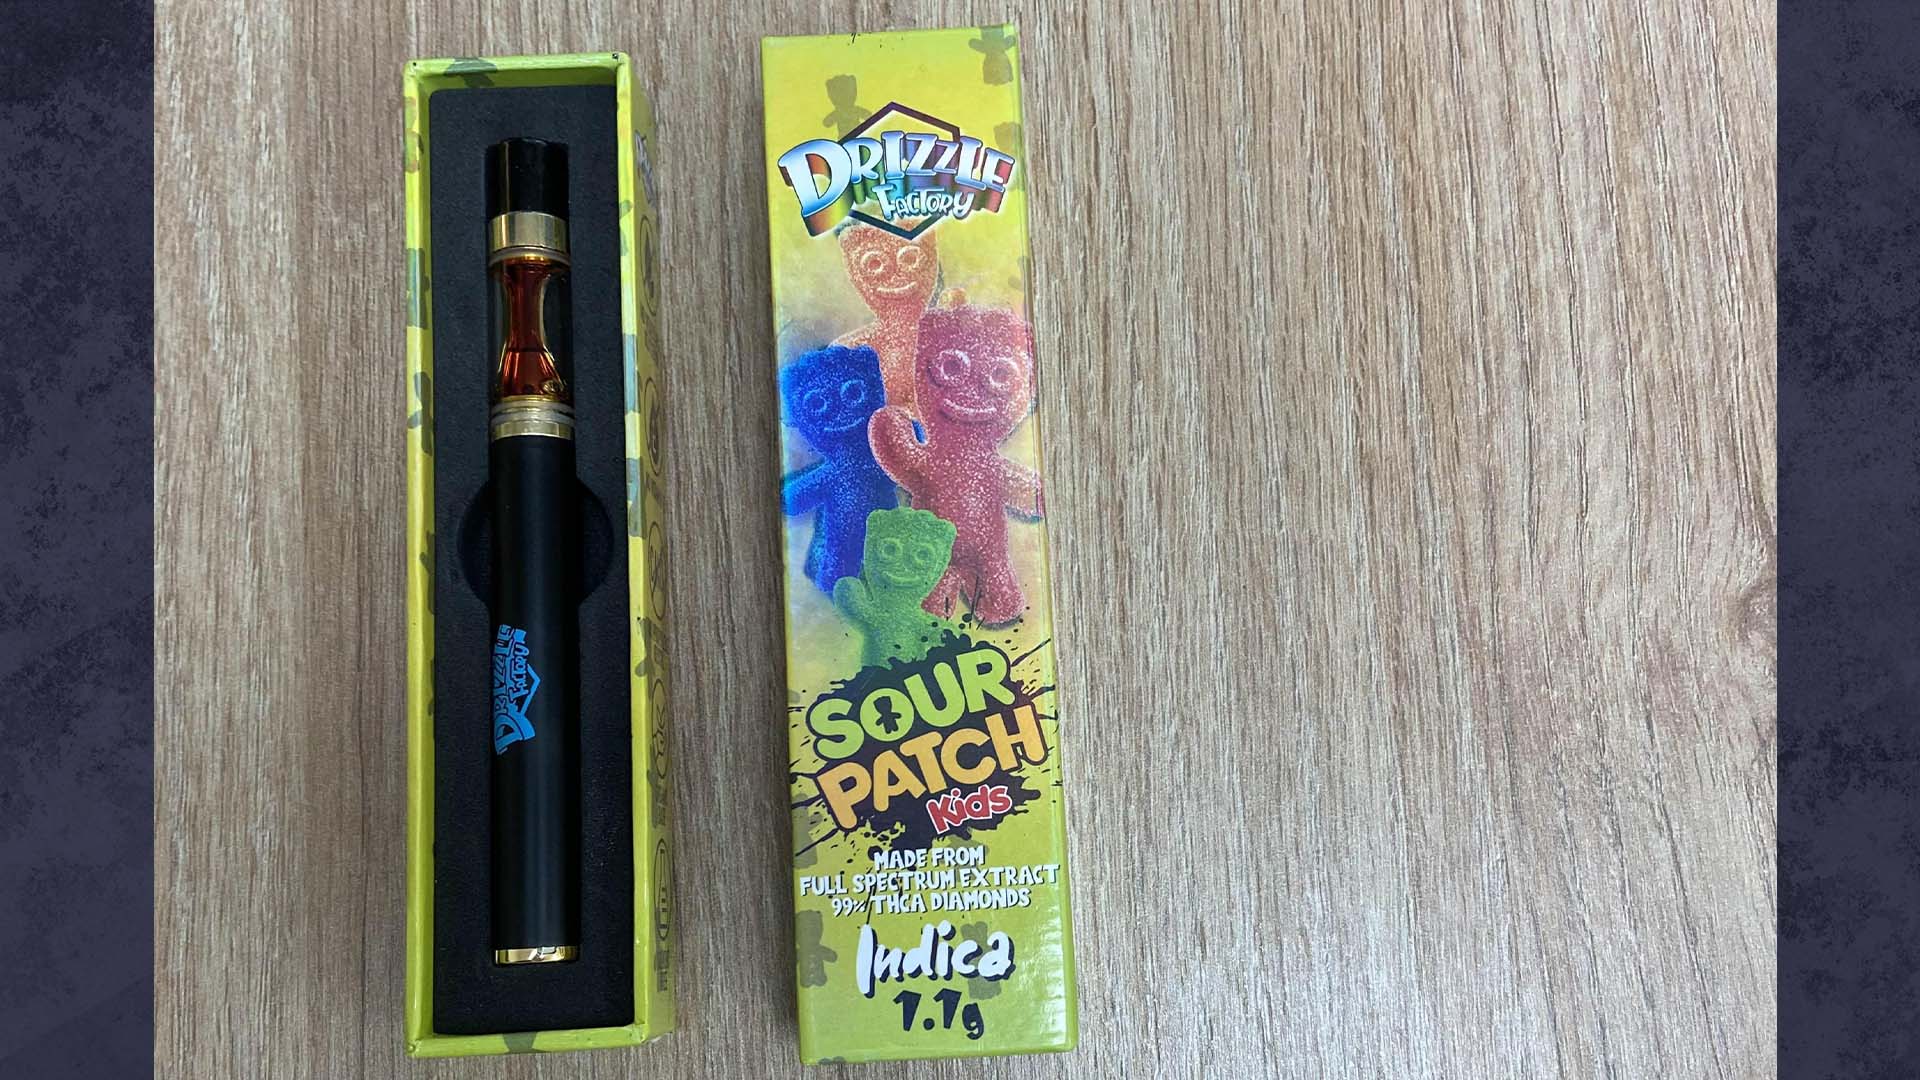 La «wax-pen» contient un concentré de cannabis consommé dans ce qui ressemble à une vapoteuse.